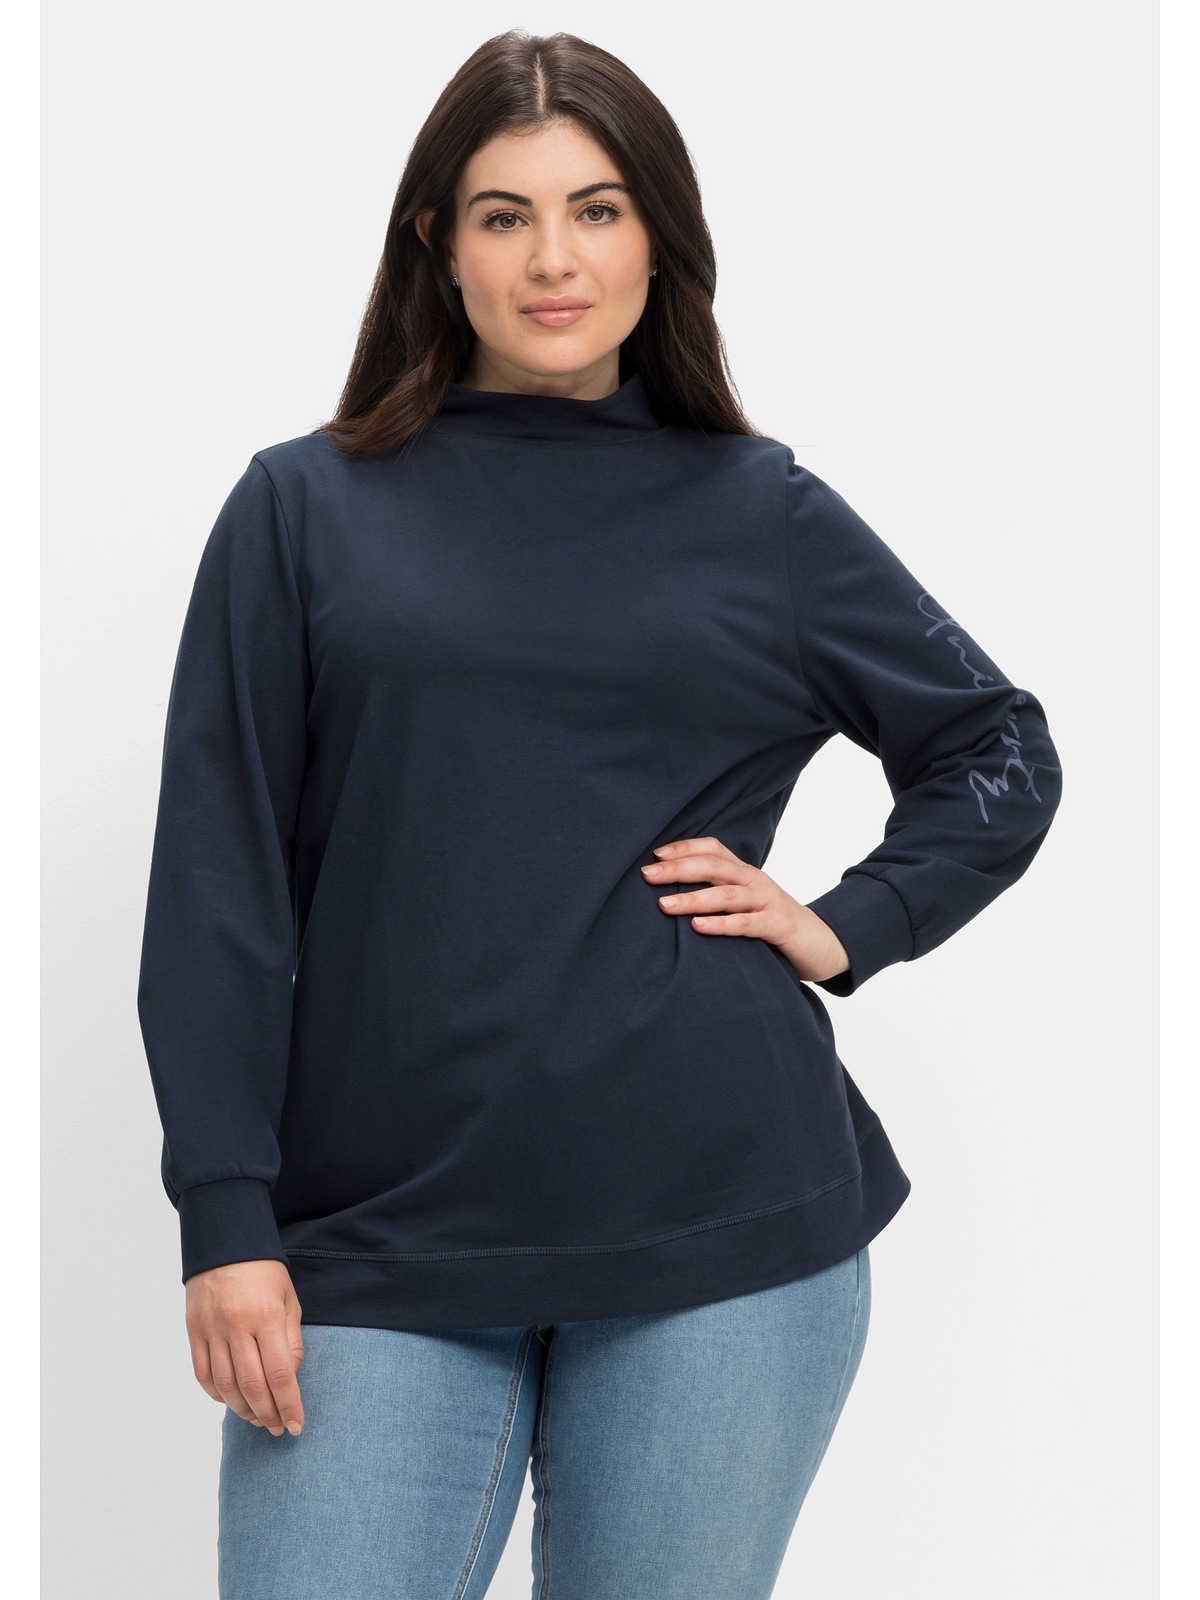 Stehkragen Sweatshirt »Große Sheego und Wordingprint Größen« mit